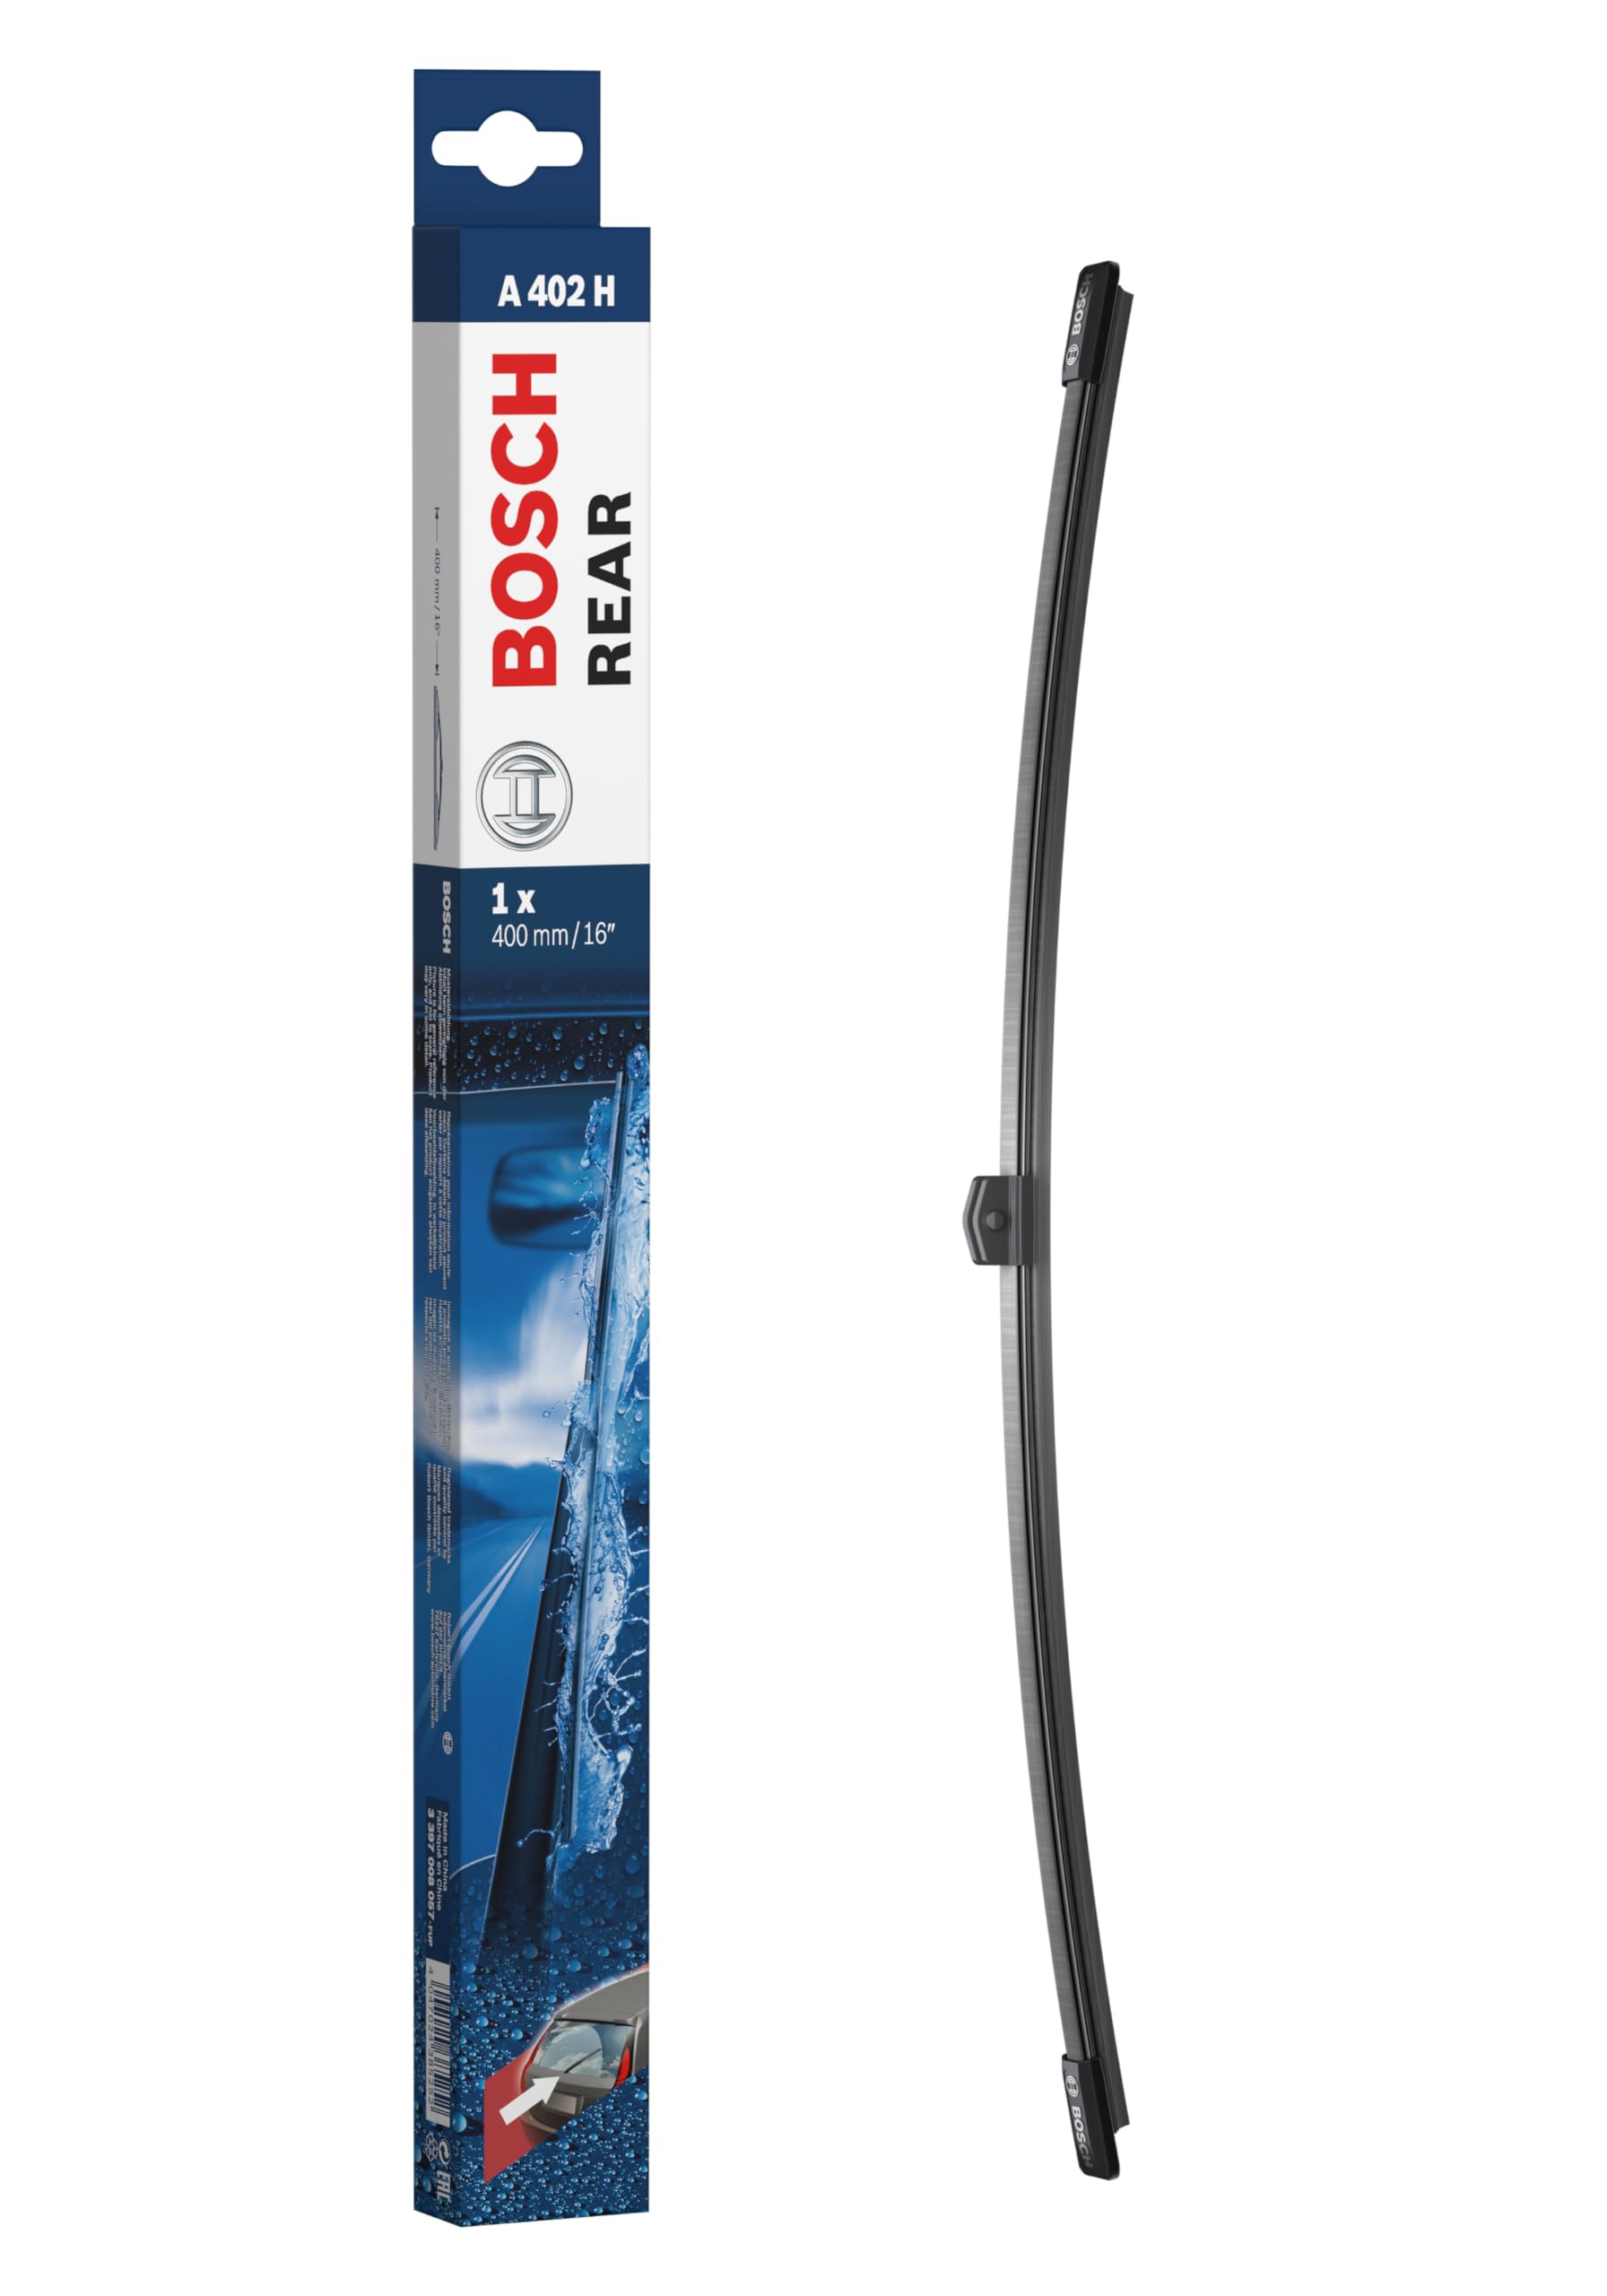 Bosch Scheibenwischer Rear A402H, Länge: 400mm – Scheibenwischer für Heckscheibe von Bosch Automotive